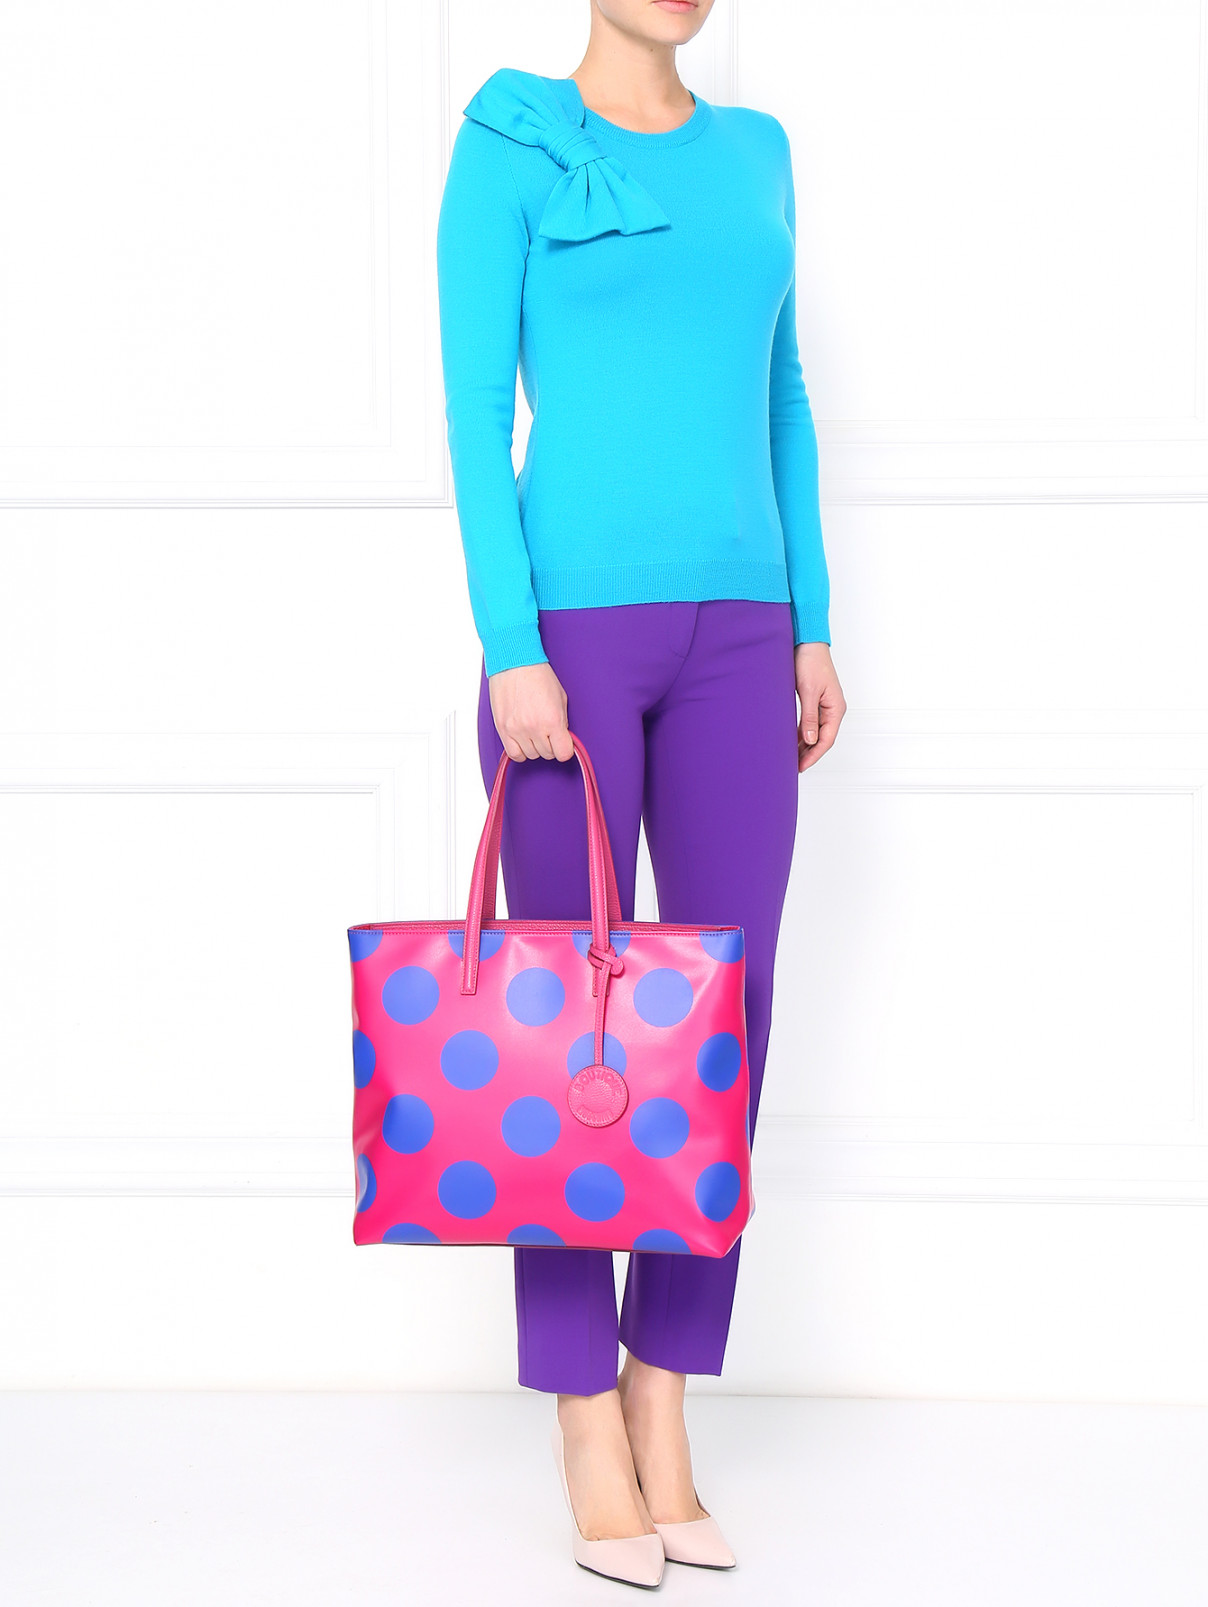 Сумка-шоппер с принтом Moschino Boutique  –  Модель Общий вид  – Цвет:  Розовый